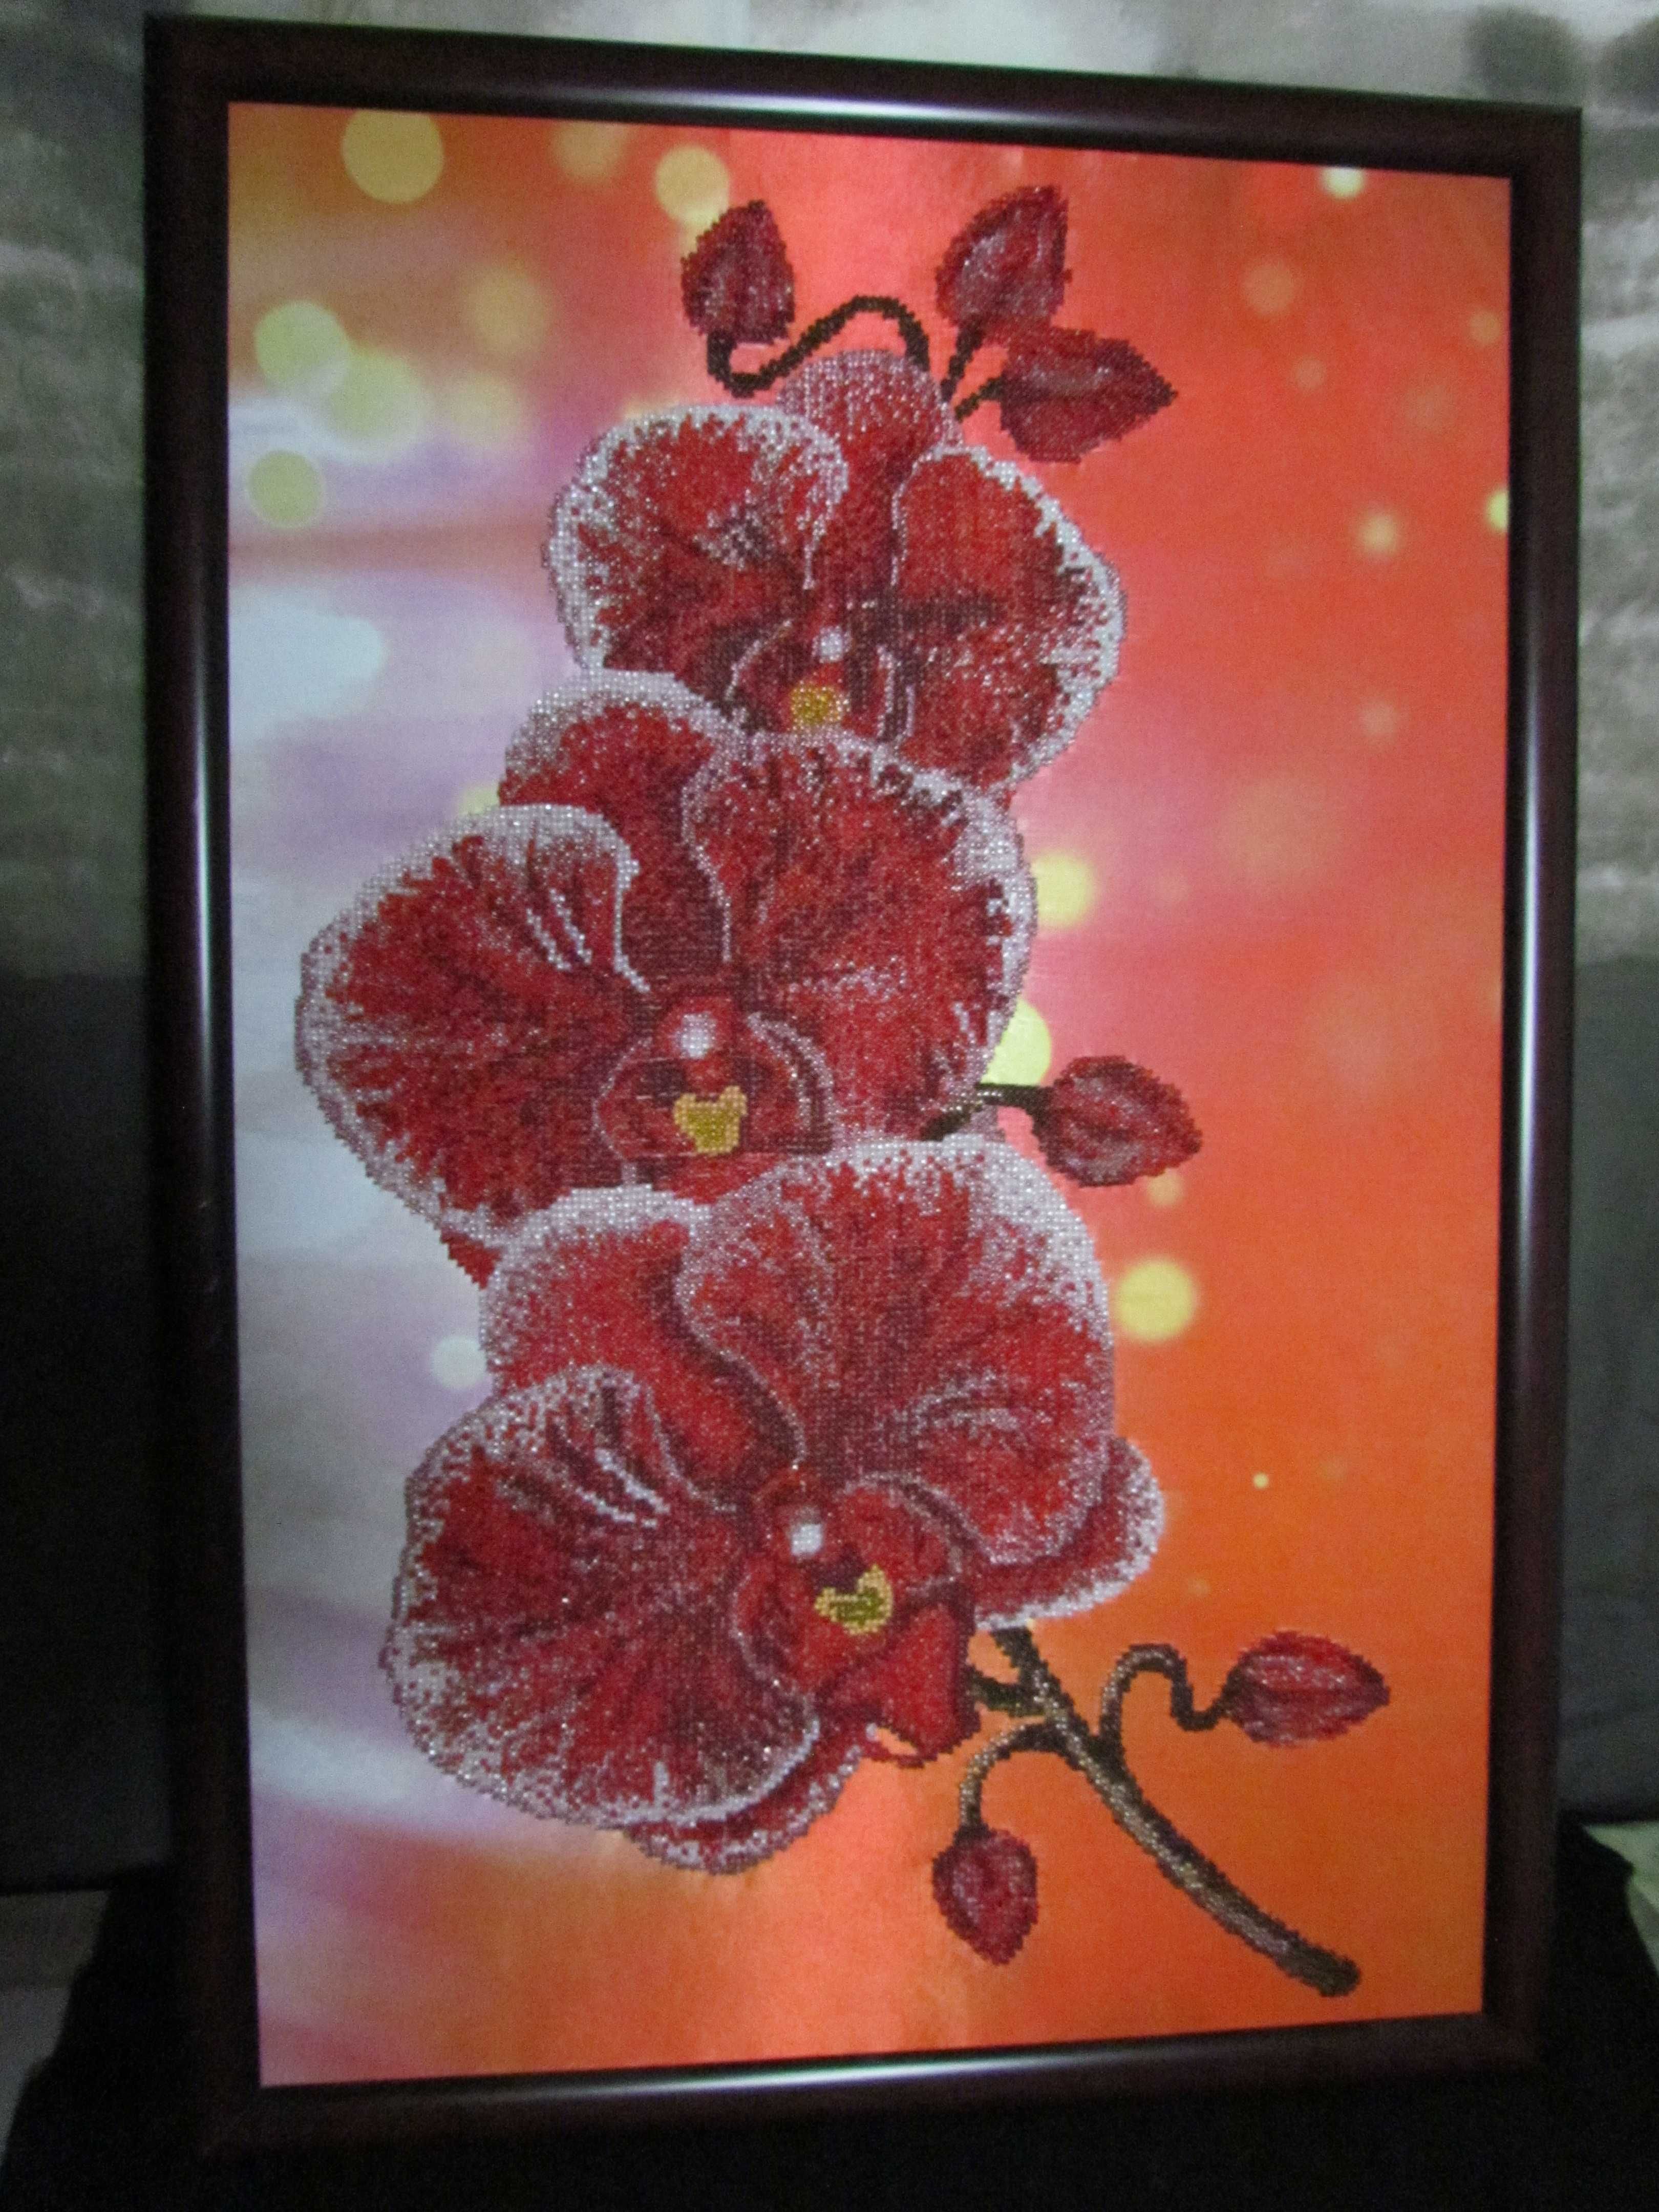 Картина "Червона орхідея" вишита бісером